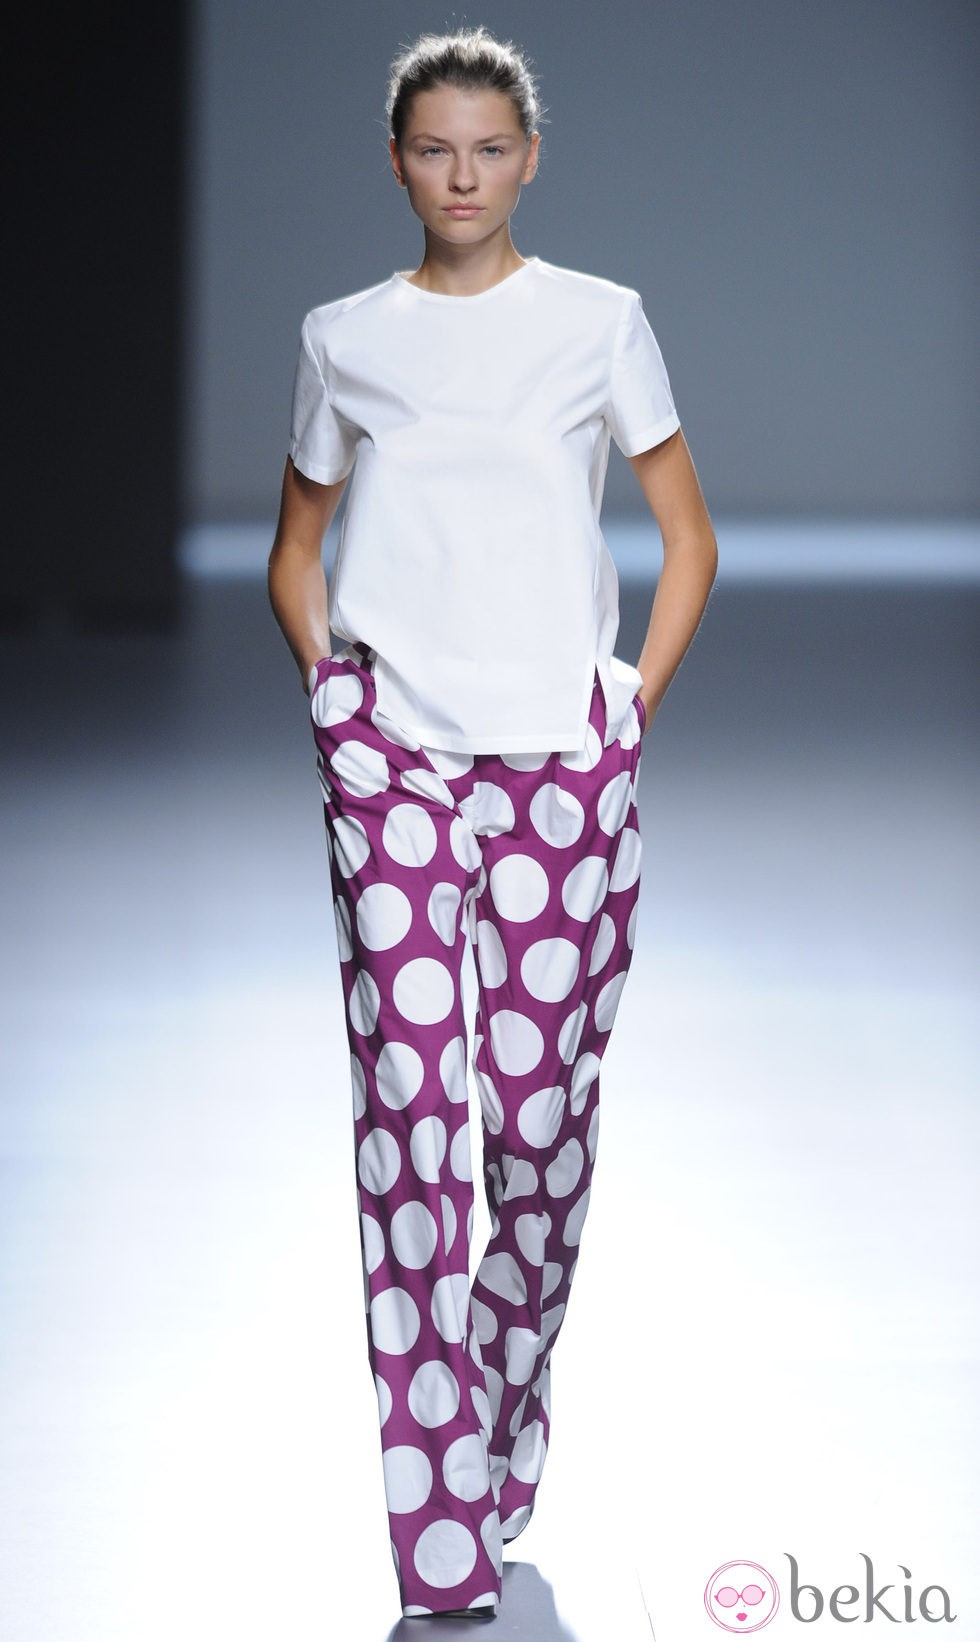 Pantalón morado con lunares blancos y blusa blanca de la colección primavera/verano 2013 de Ángel Schlesser